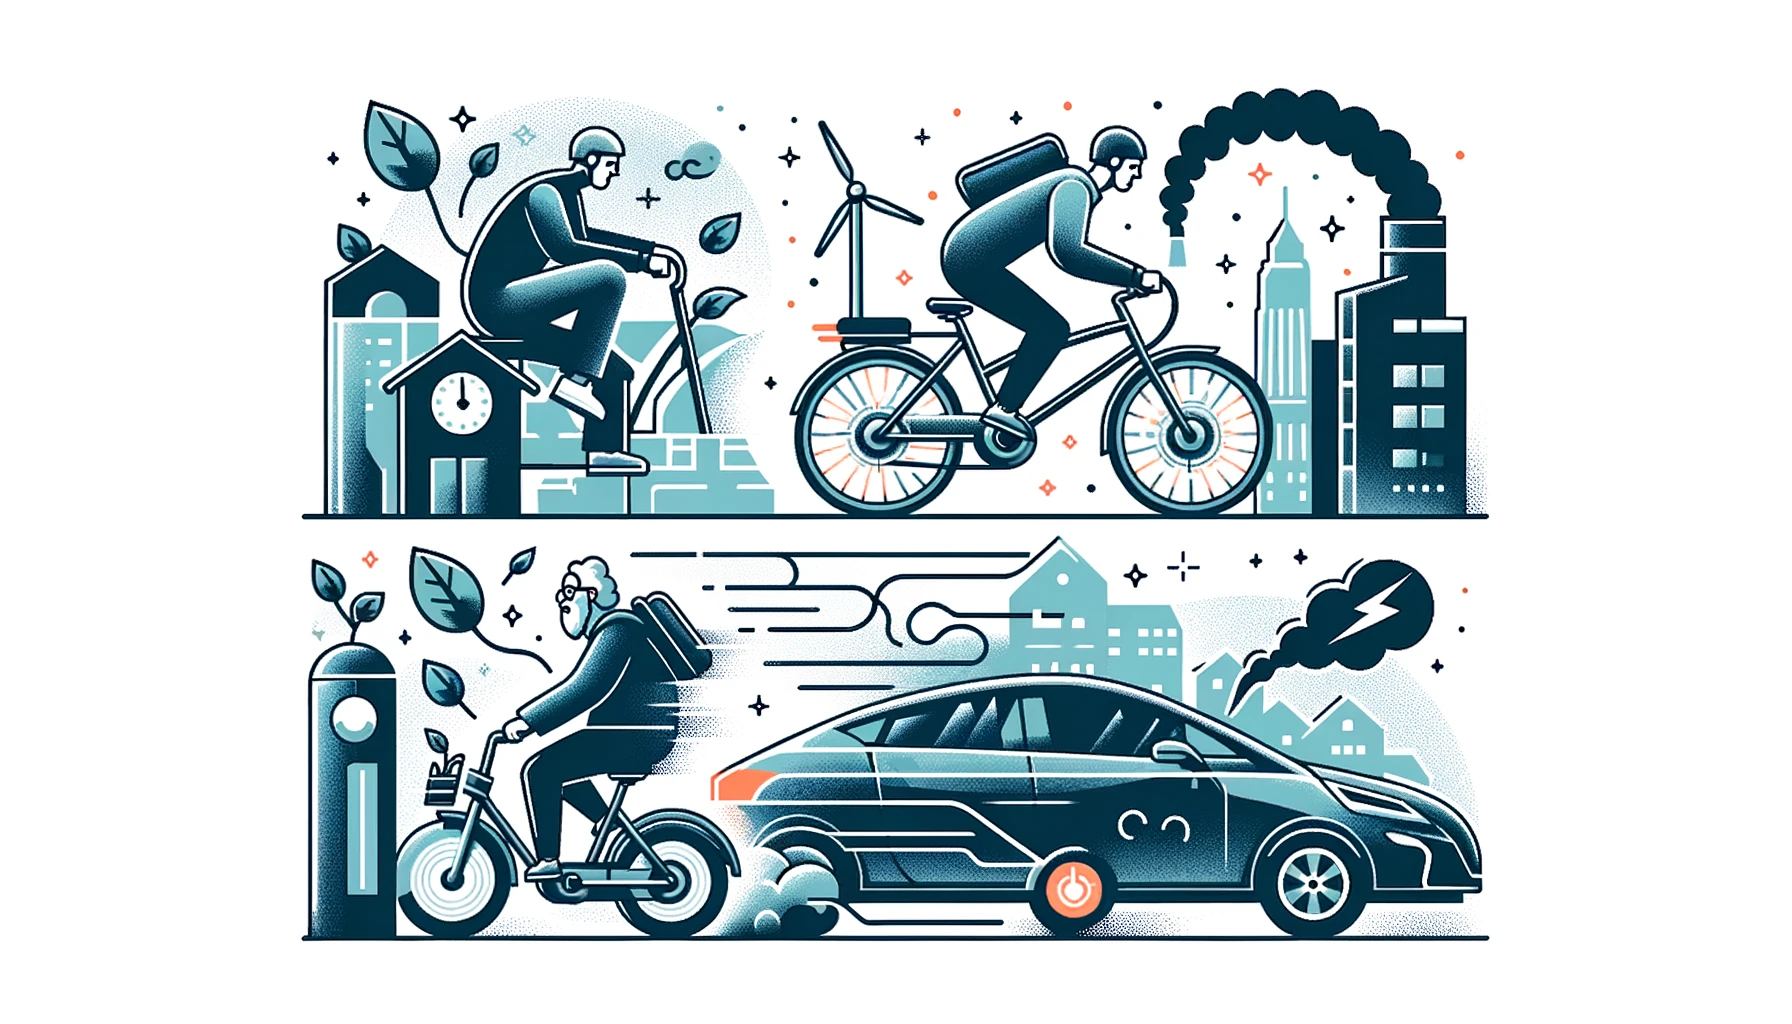 전기 자전거 대 일반 자전거: 도시 생활을 위한 최적의 이동 수단 선택 가이드 - 전기 자전거의 장점